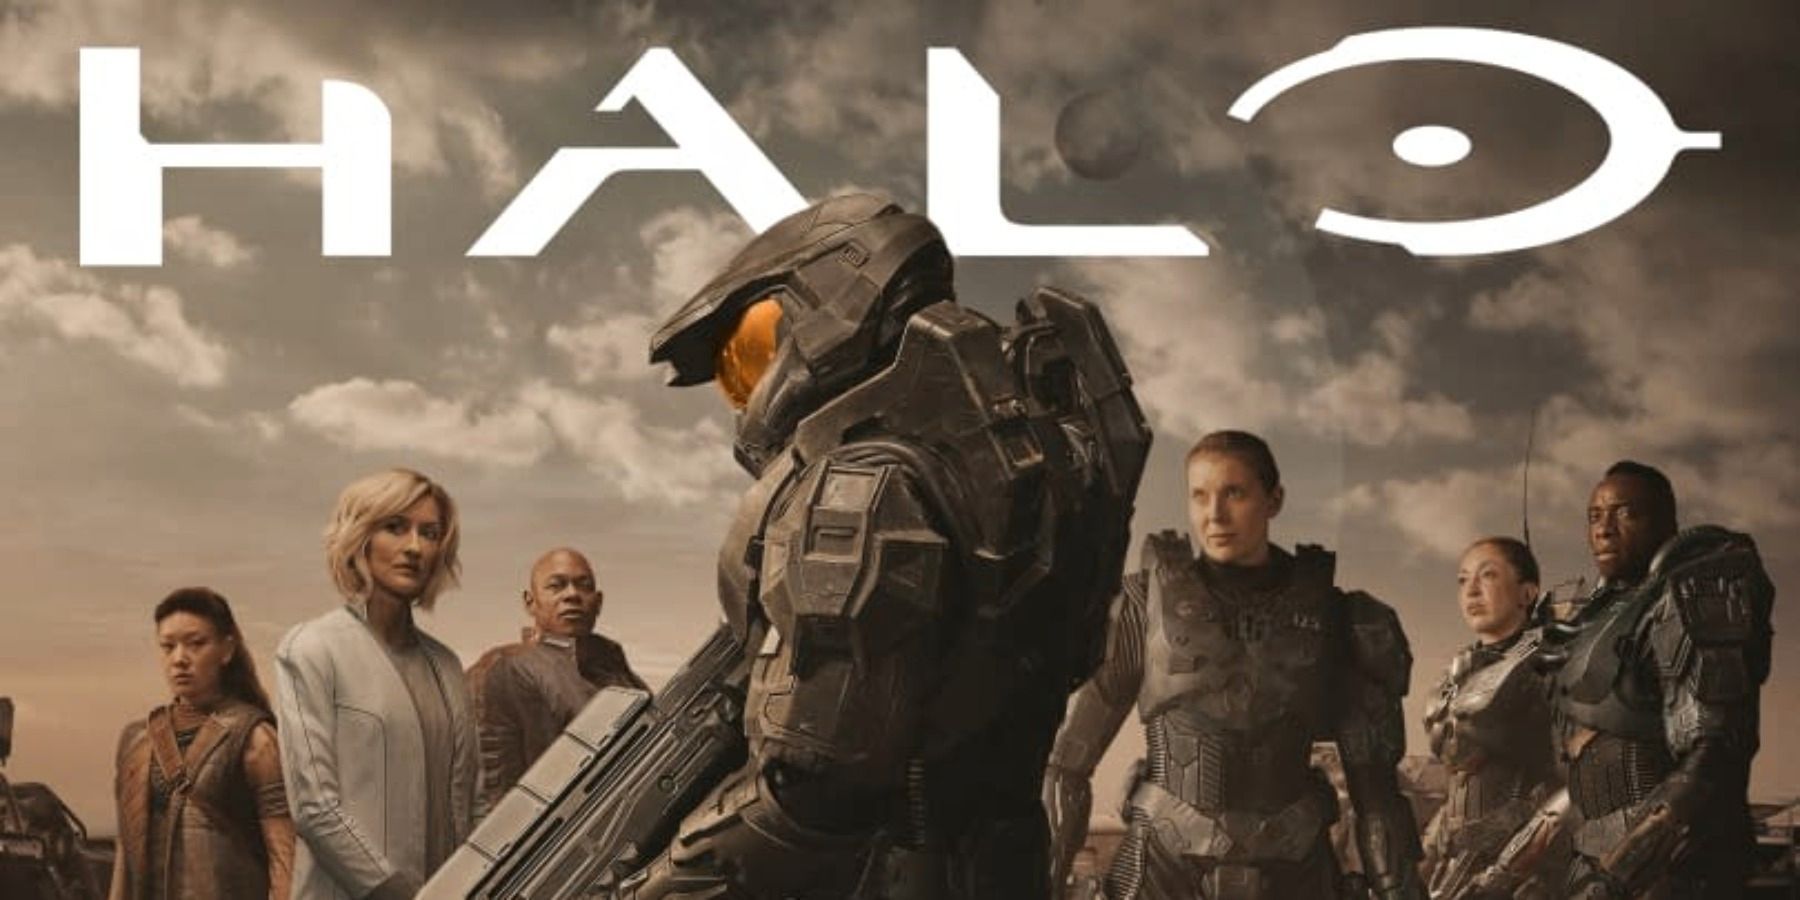 Tin vui cho fan, tập đầu tiên của Halo TV Series sẽ phát miễn phí trên Youtube